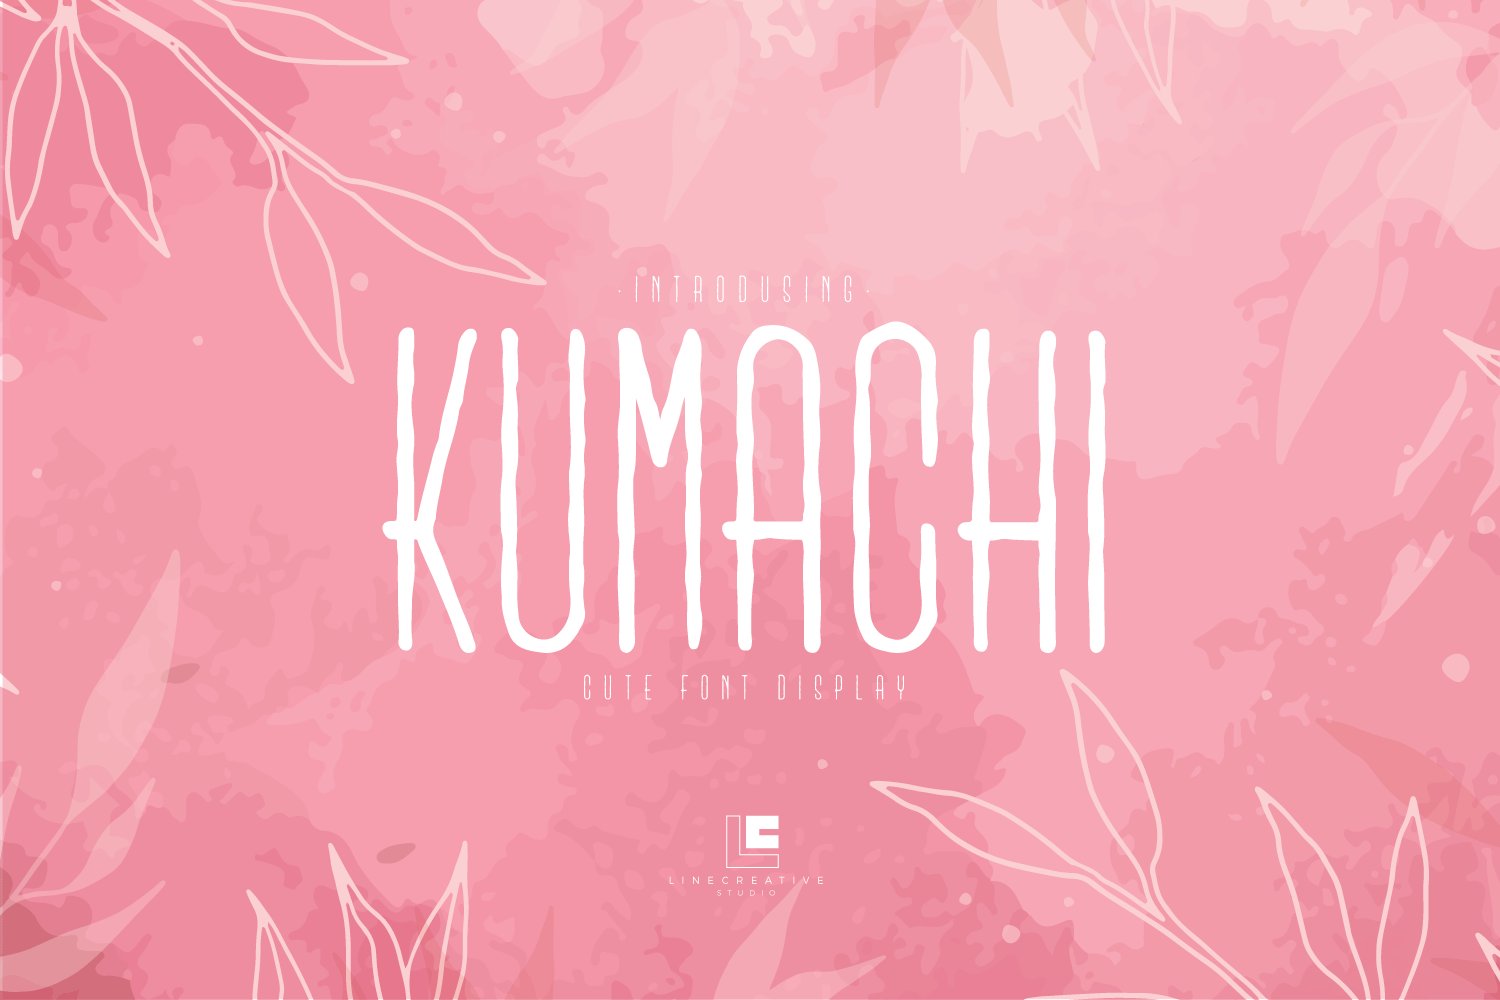 Kumachi cover image.